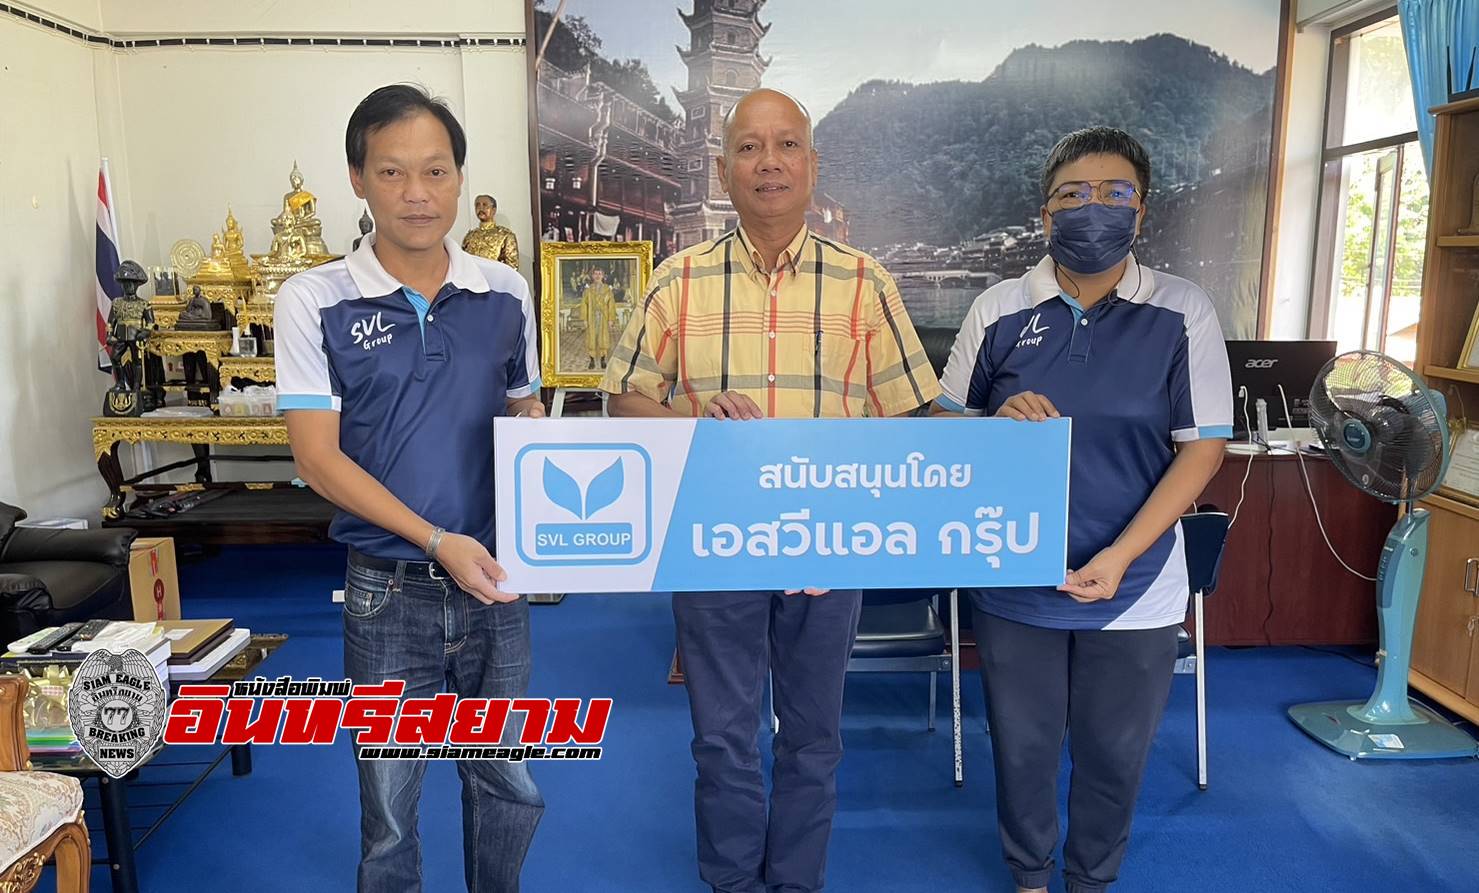 ประจวบคีรีขันธ์​-SVL Group ร่วมทอดผ้าป่า สมทบทุน “โครงการทุนเล่าเรียนหลวงสำหรับพระสงฆ์ไทย”